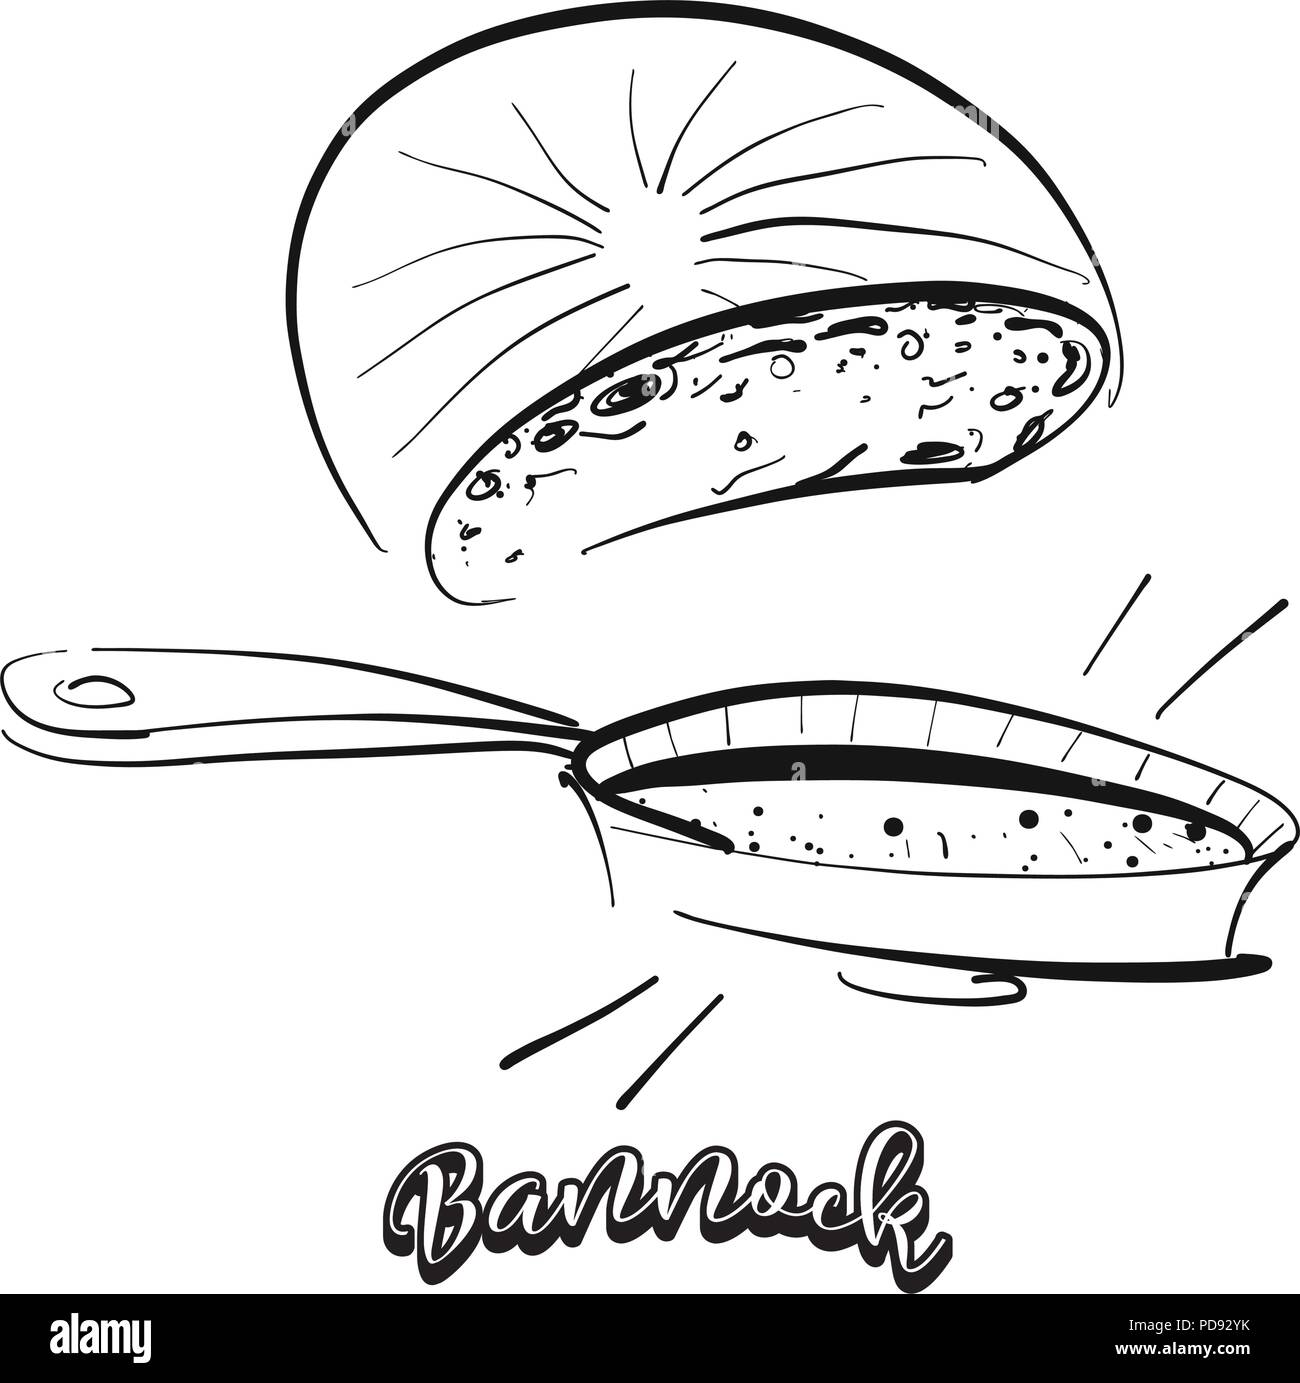 Croquis dessinés à la main de pain bannock. De dessin vectoriel, tous faits de nourriture, habituellement connu au Royaume-Uni, Ecosse. Illustration du pain series. Illustration de Vecteur